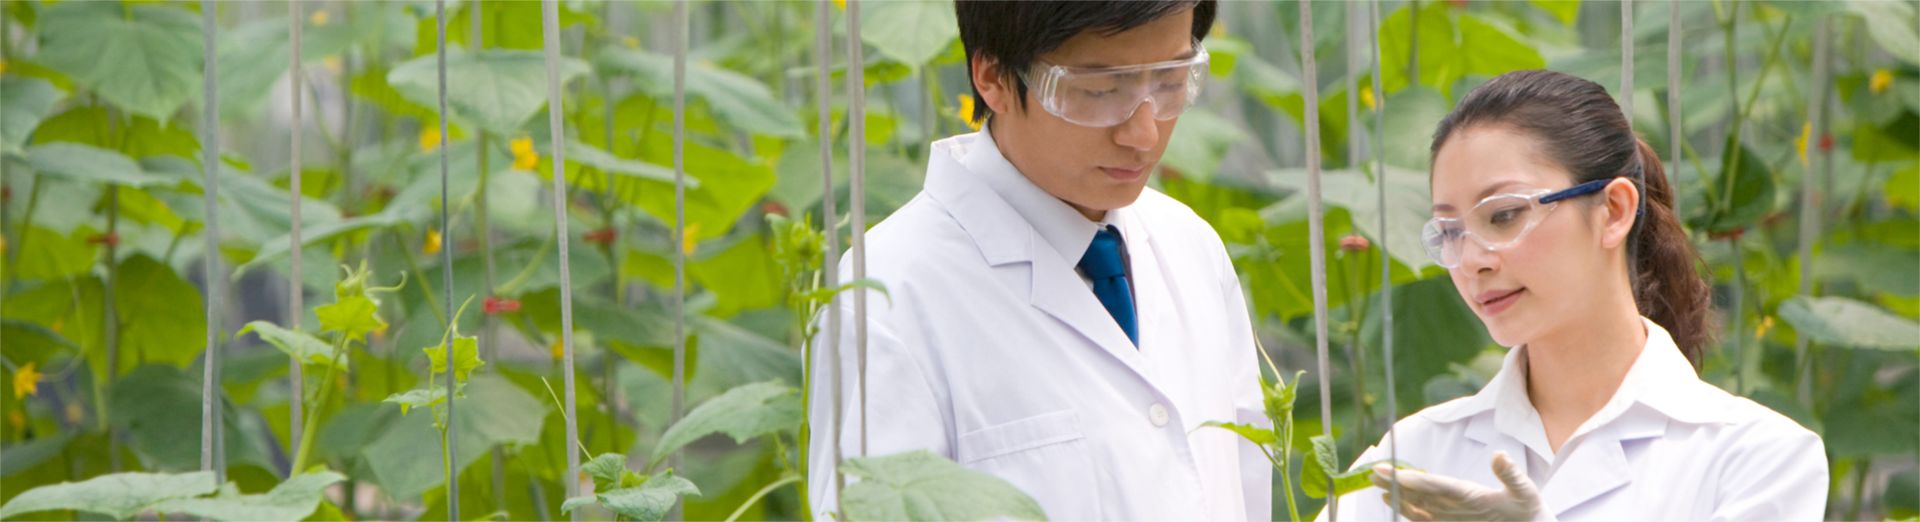 Ученые исследуют растения